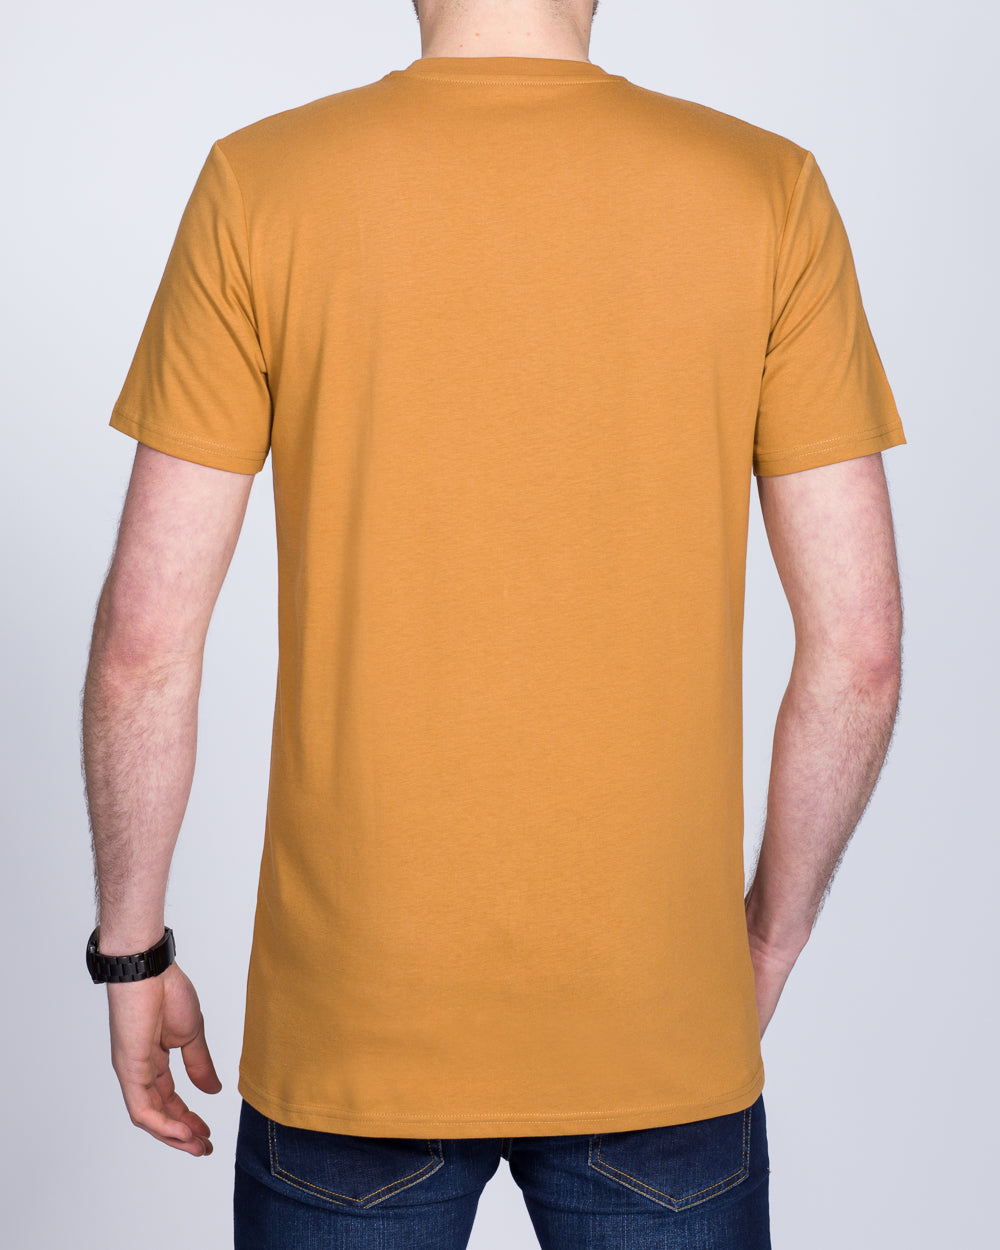 Girav Sydney Extra Tall T-Shirt (sugar brown)